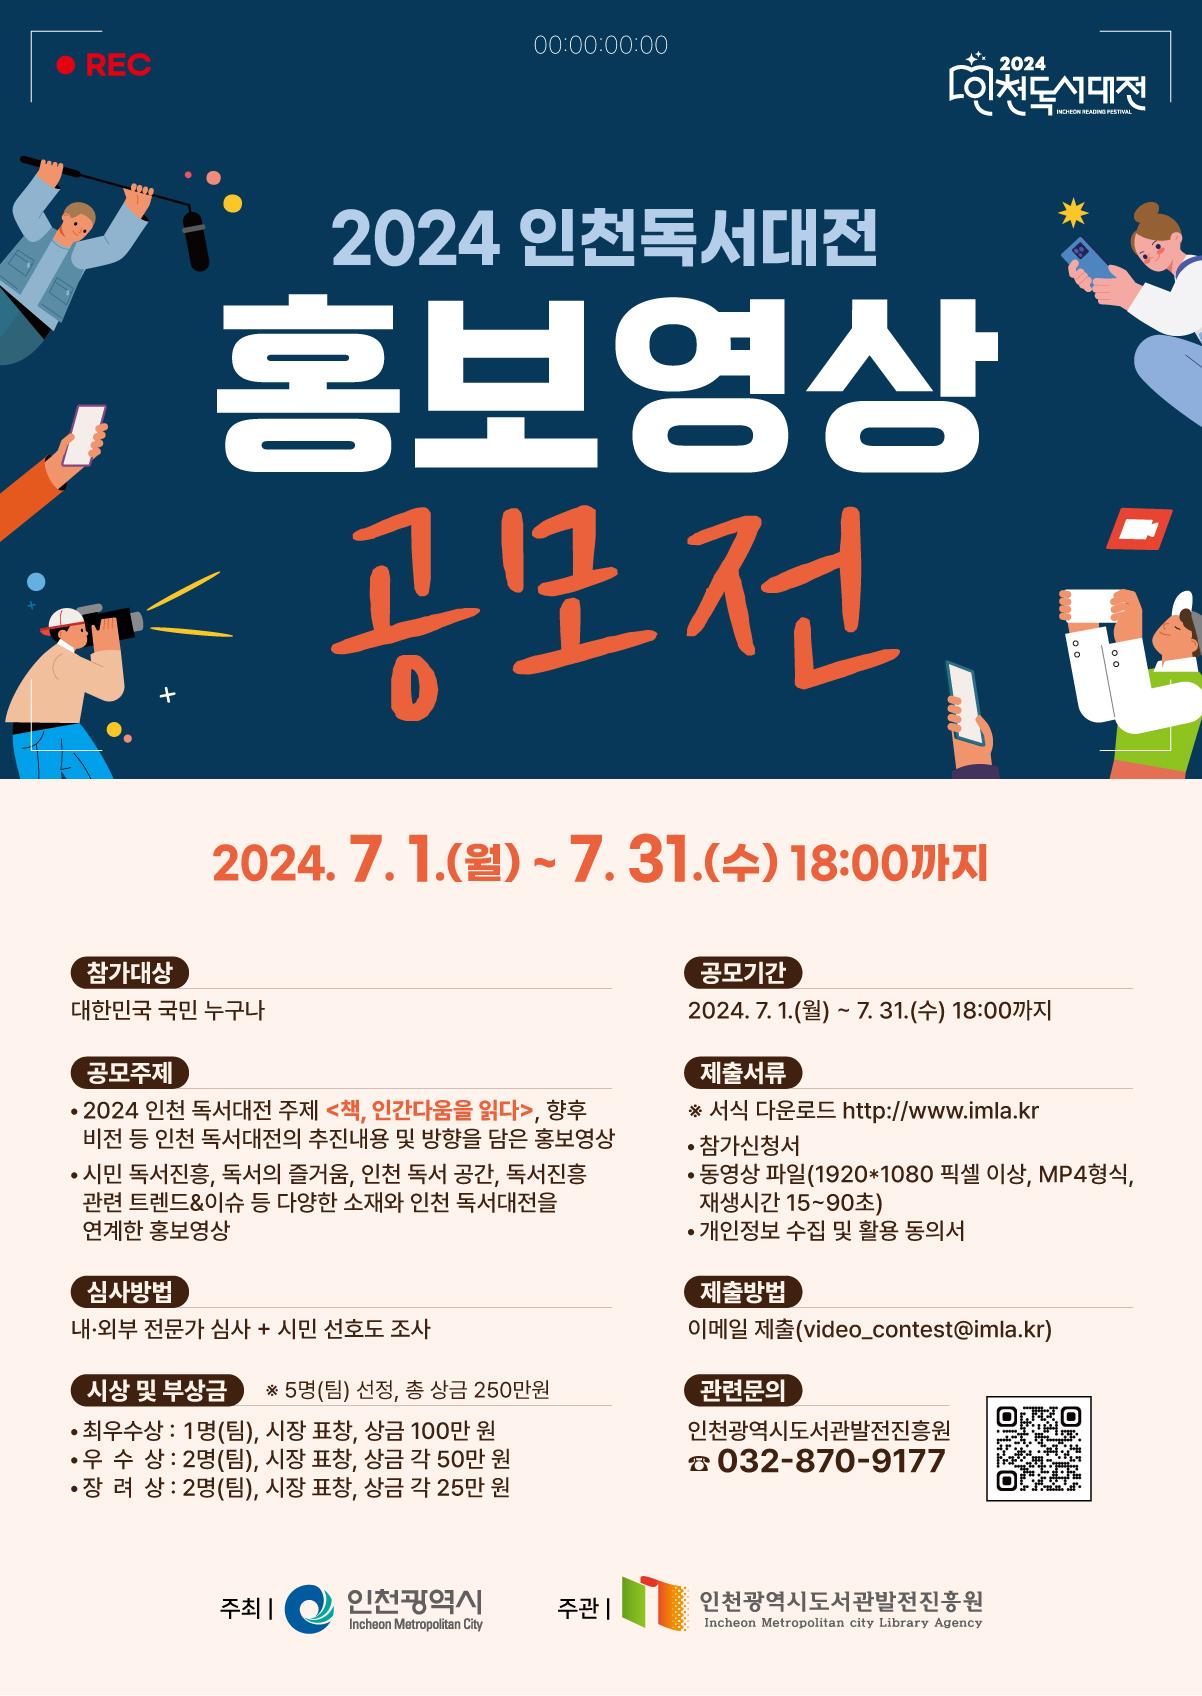 2024 인천 독서대전 홍보영상 공모전